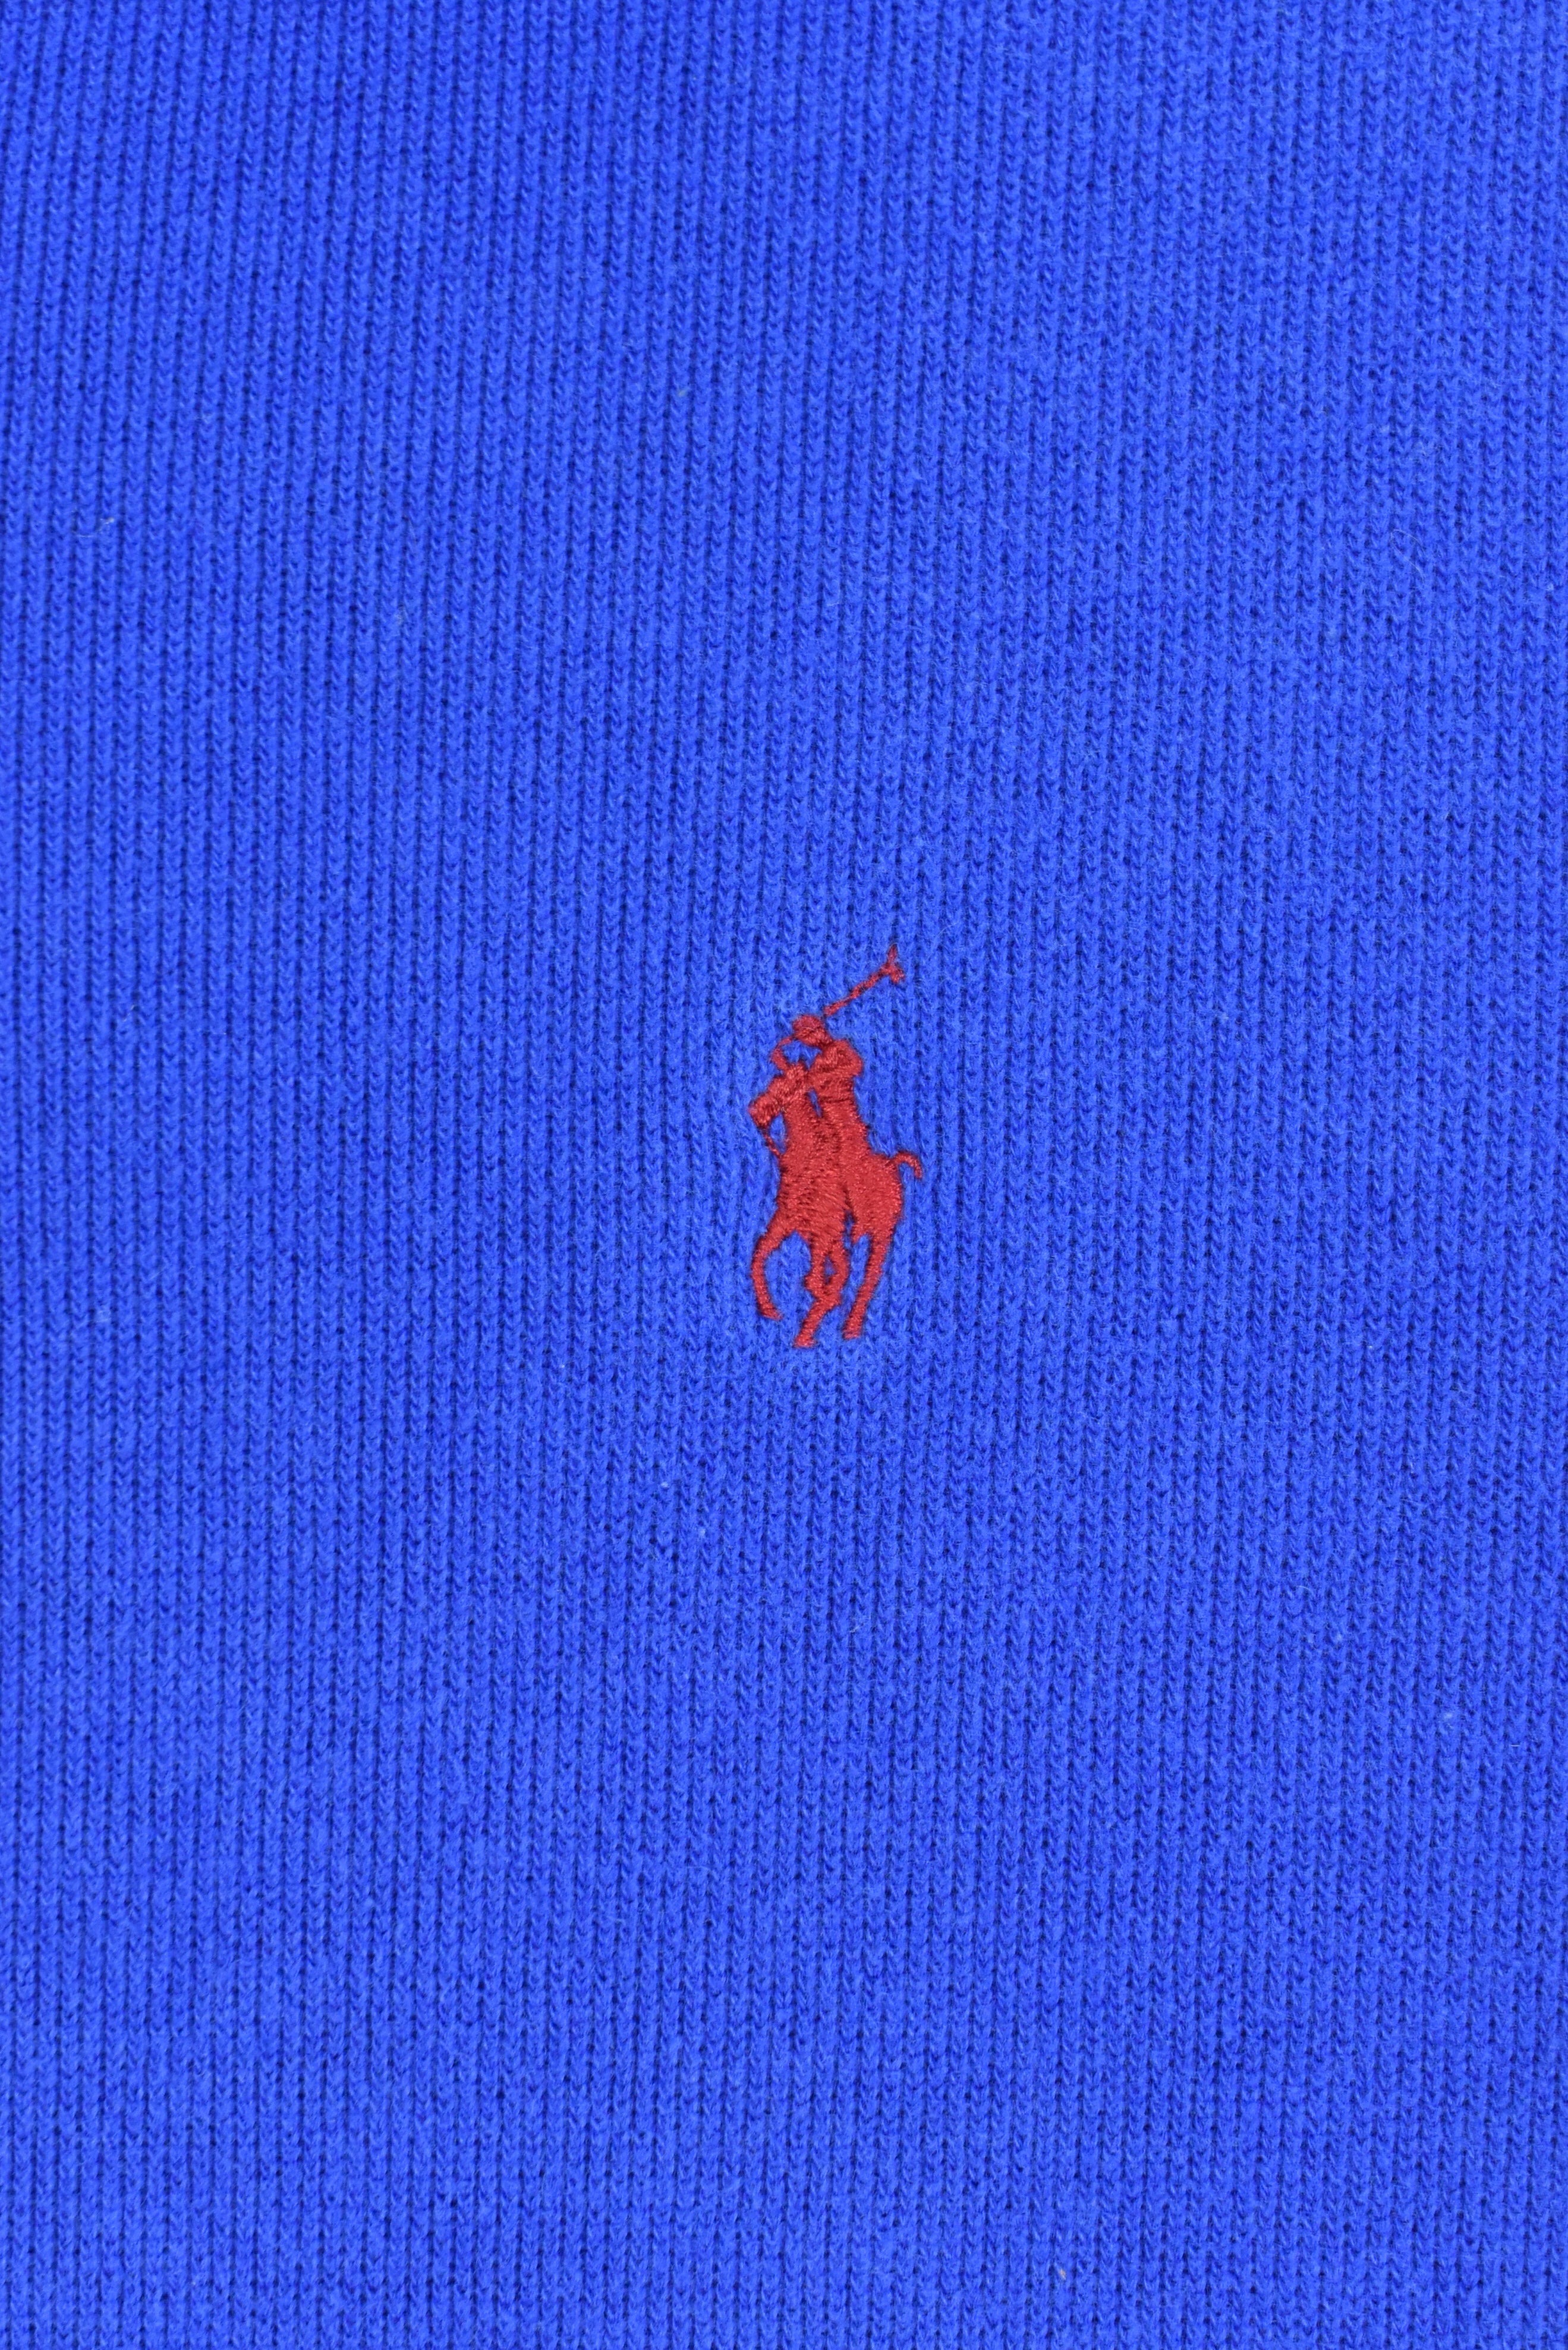 Vintage Ralph Lauren embroidered 1/4 zip blue sweatshirt | Small RALPH LAUREN